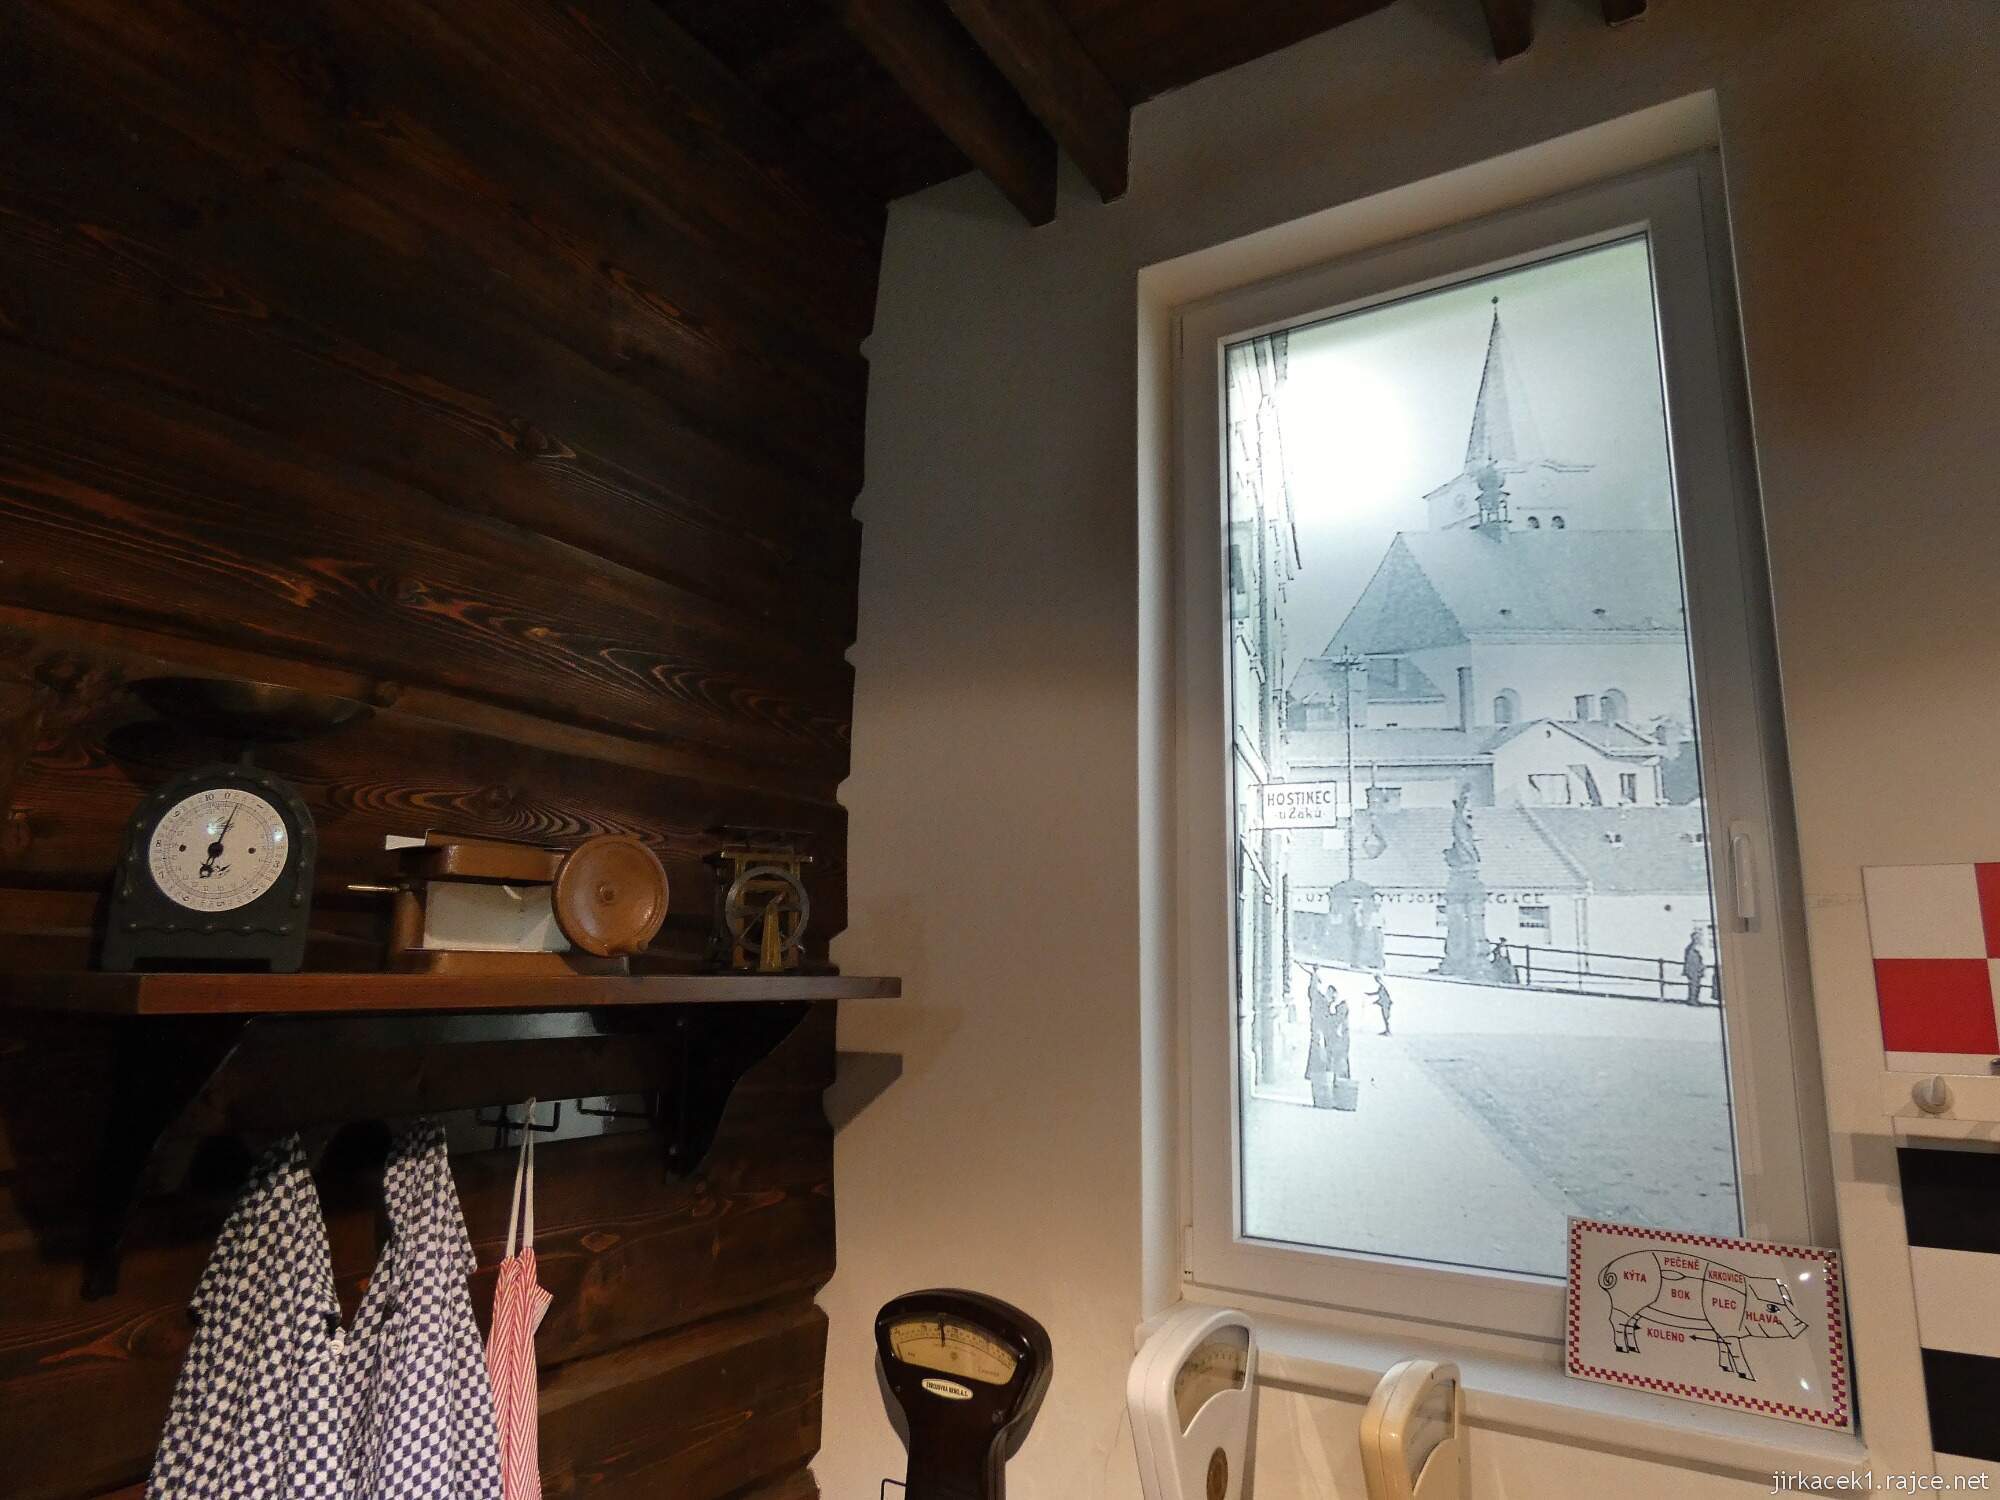 D - Valašské Meziříčí - muzeum řeznictví 22 - expozice - okno se starou fotografií